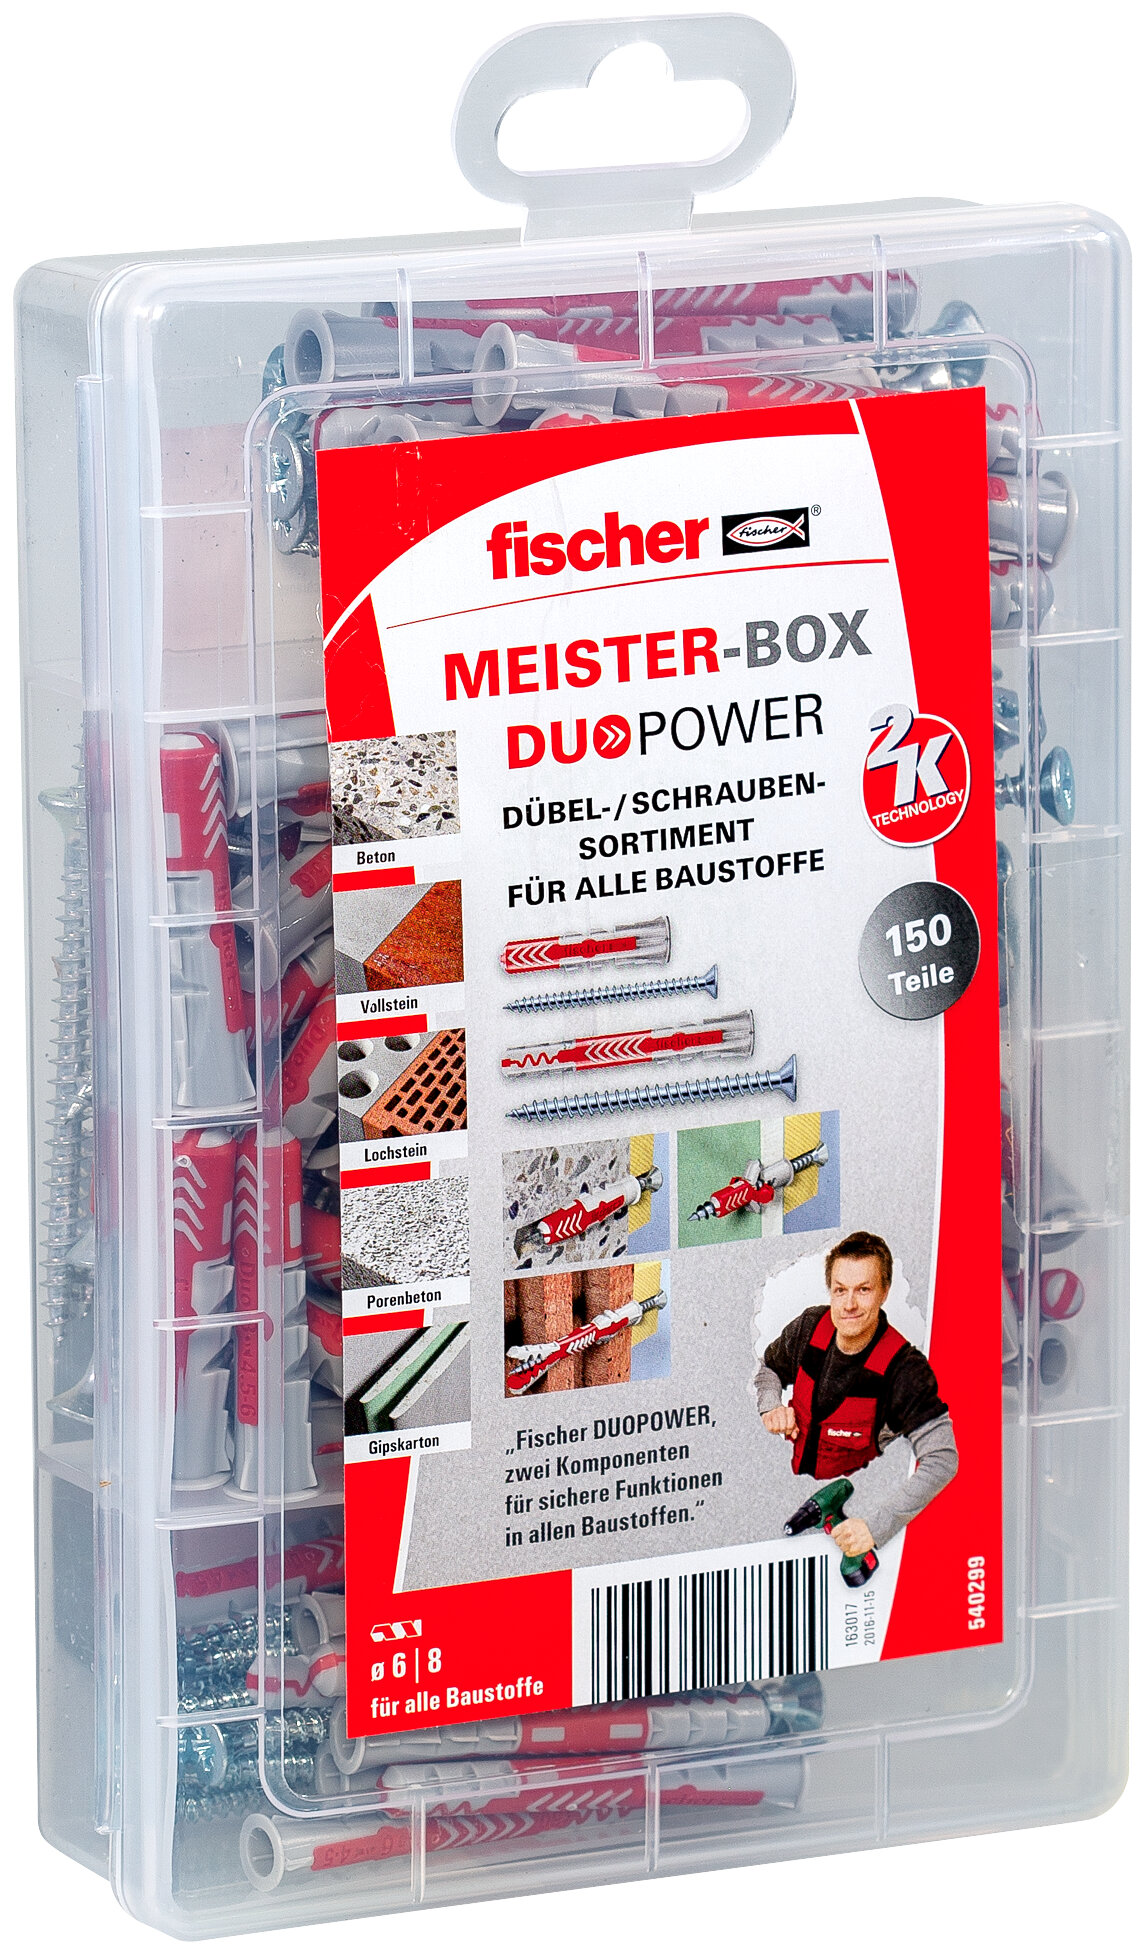 Meister-Box DUOPOWER kurz/lang mit Schrauben